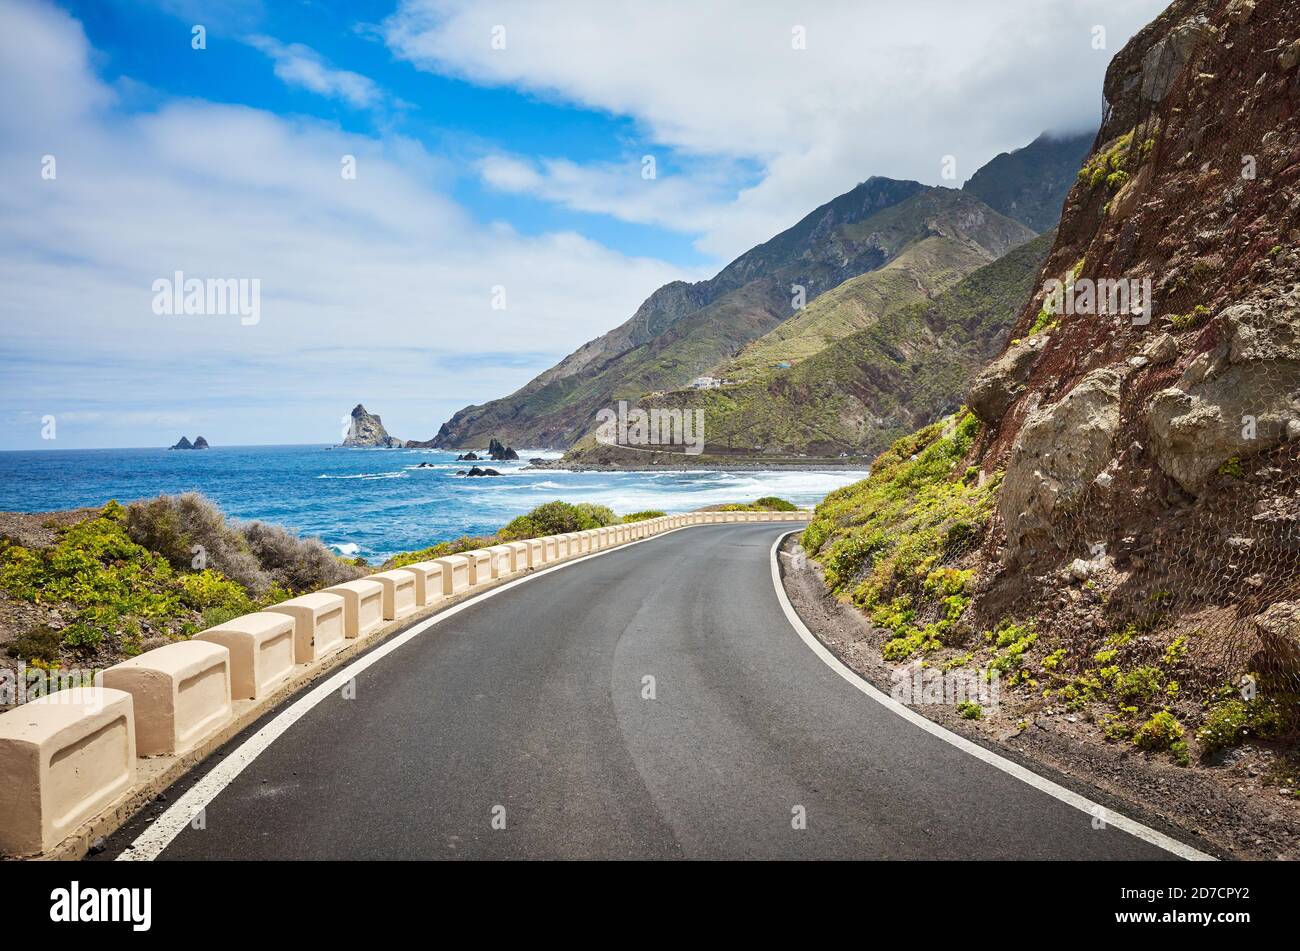 Landschaftlich schöne Meerstraße am Macizo de Anaga Gebirge, Atlantikküste von Teneriffa, Spanien. Stockfoto